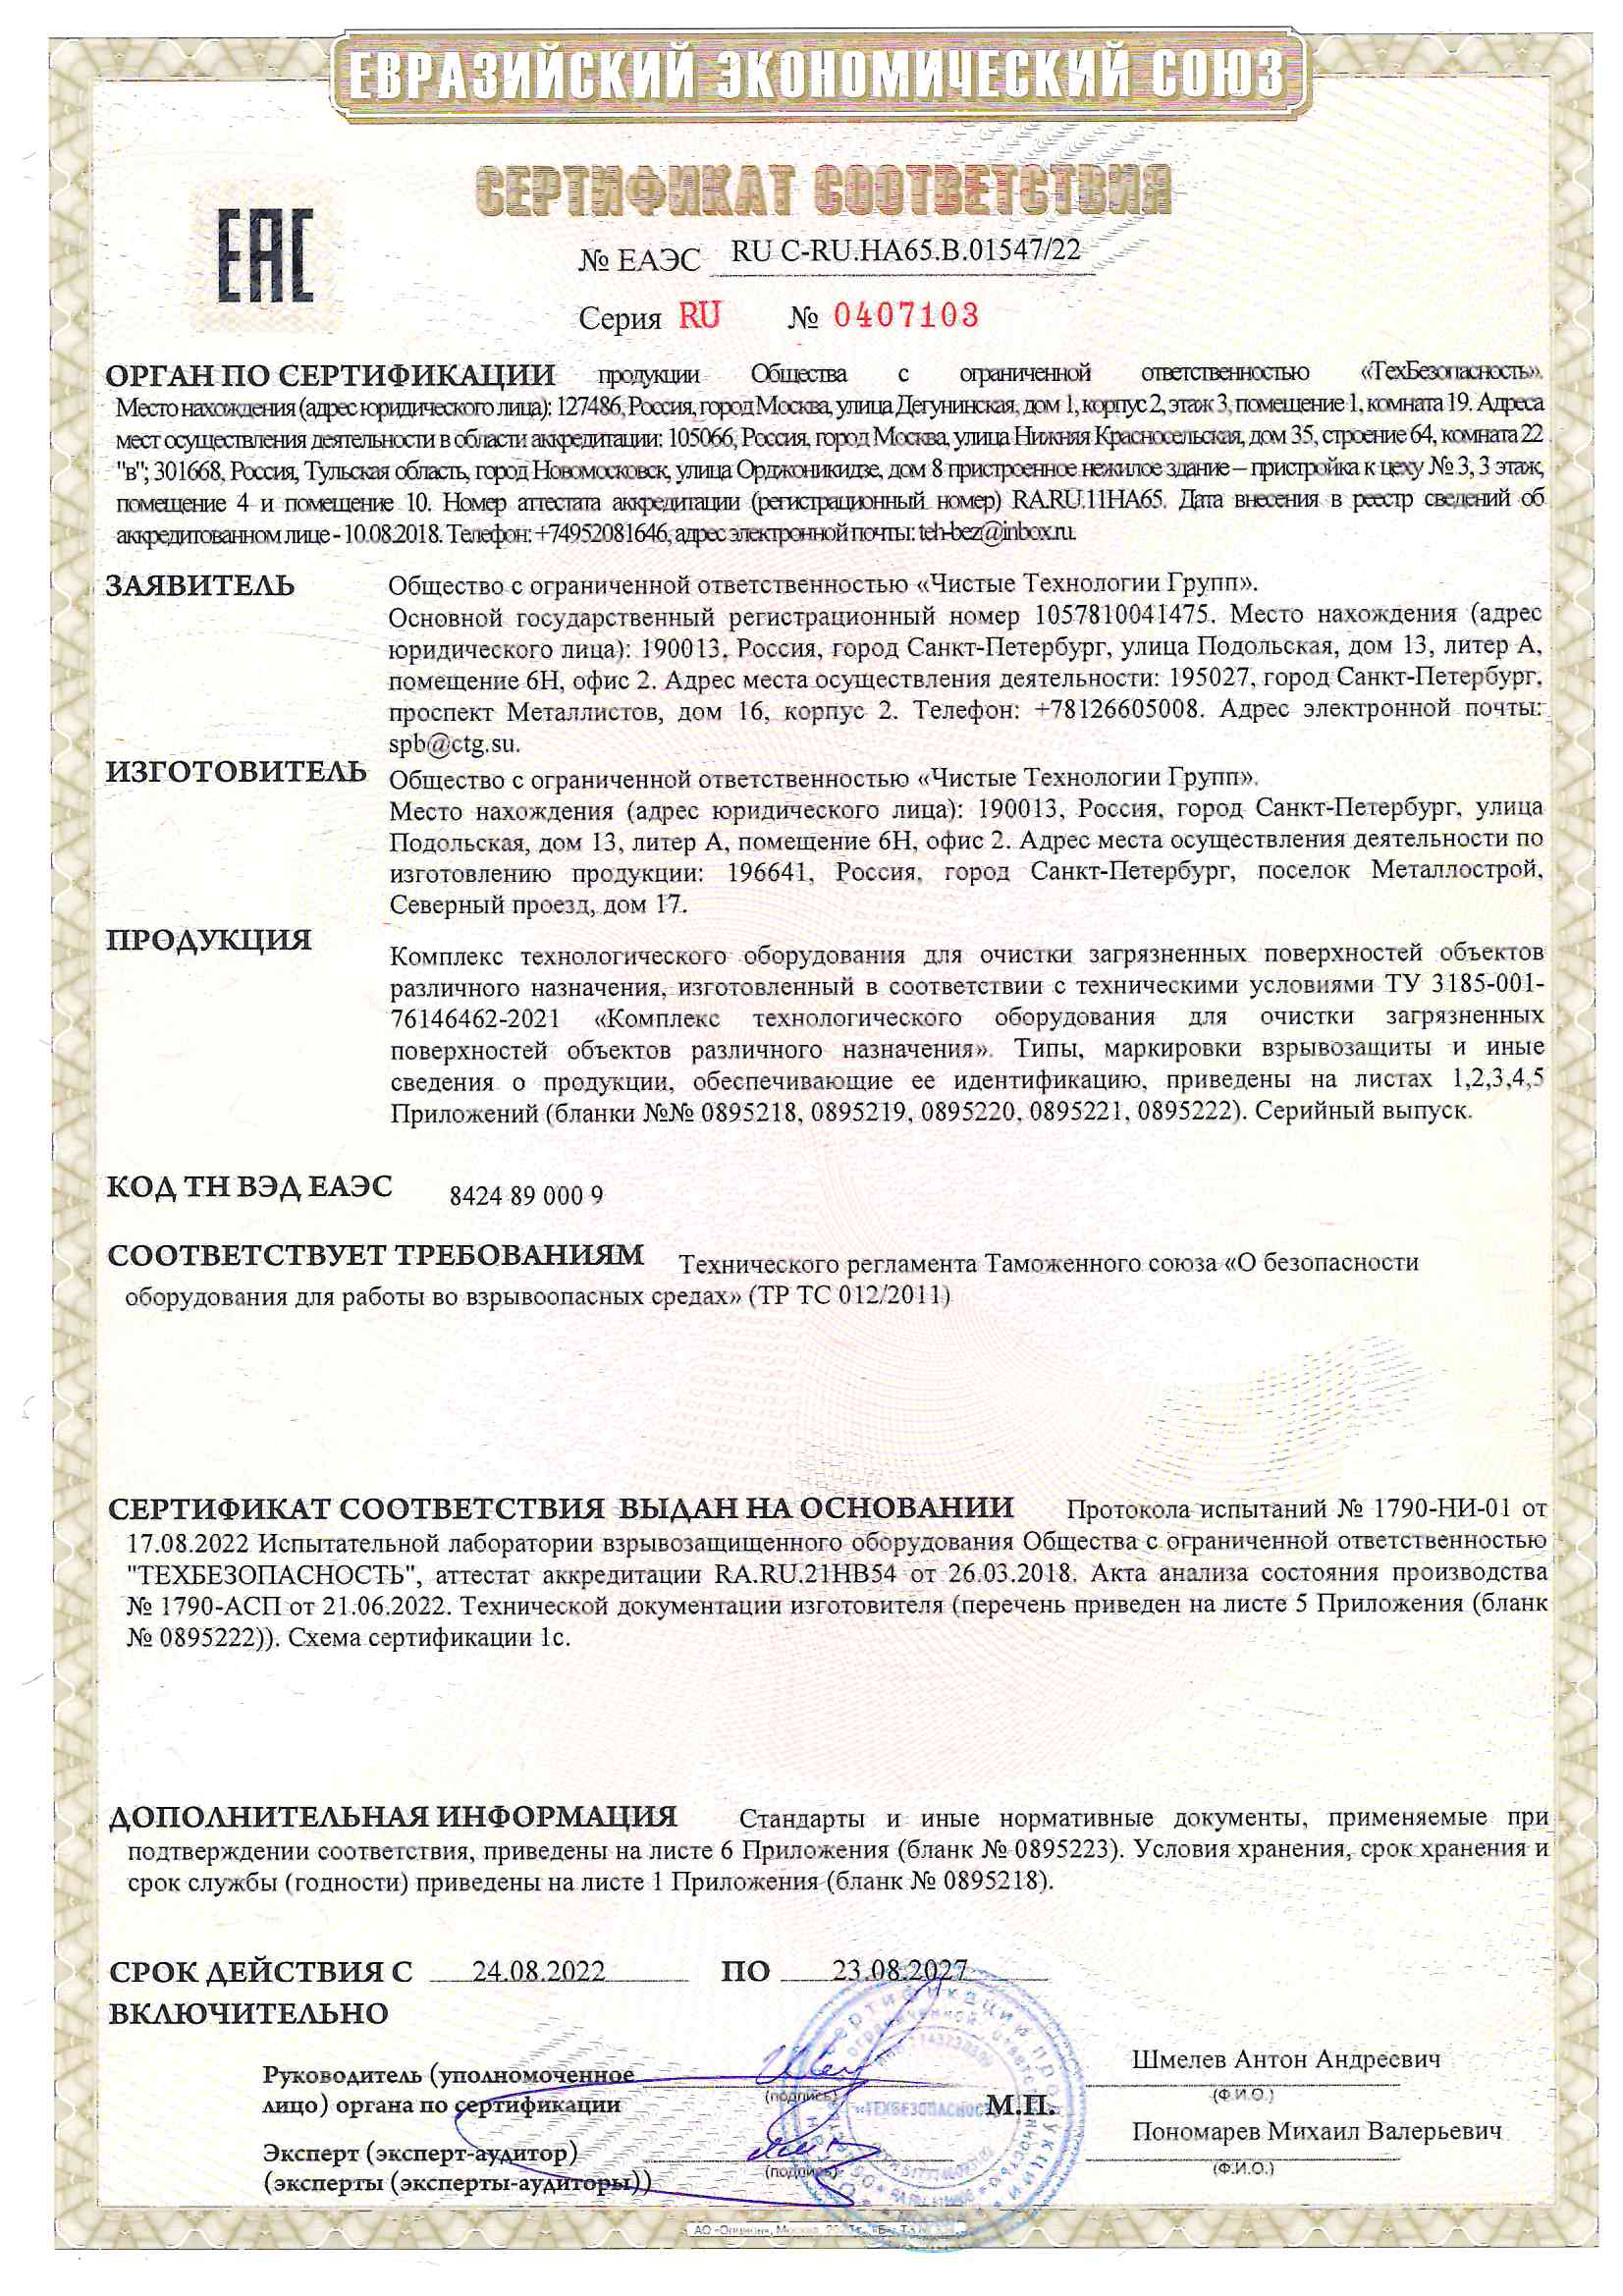 сертификат соответствия CTG стандартам Технического регламента Таможенного союза «О безопасности оборудования для работы во взрывоопасных средах» (ТР ТС 012/2011).